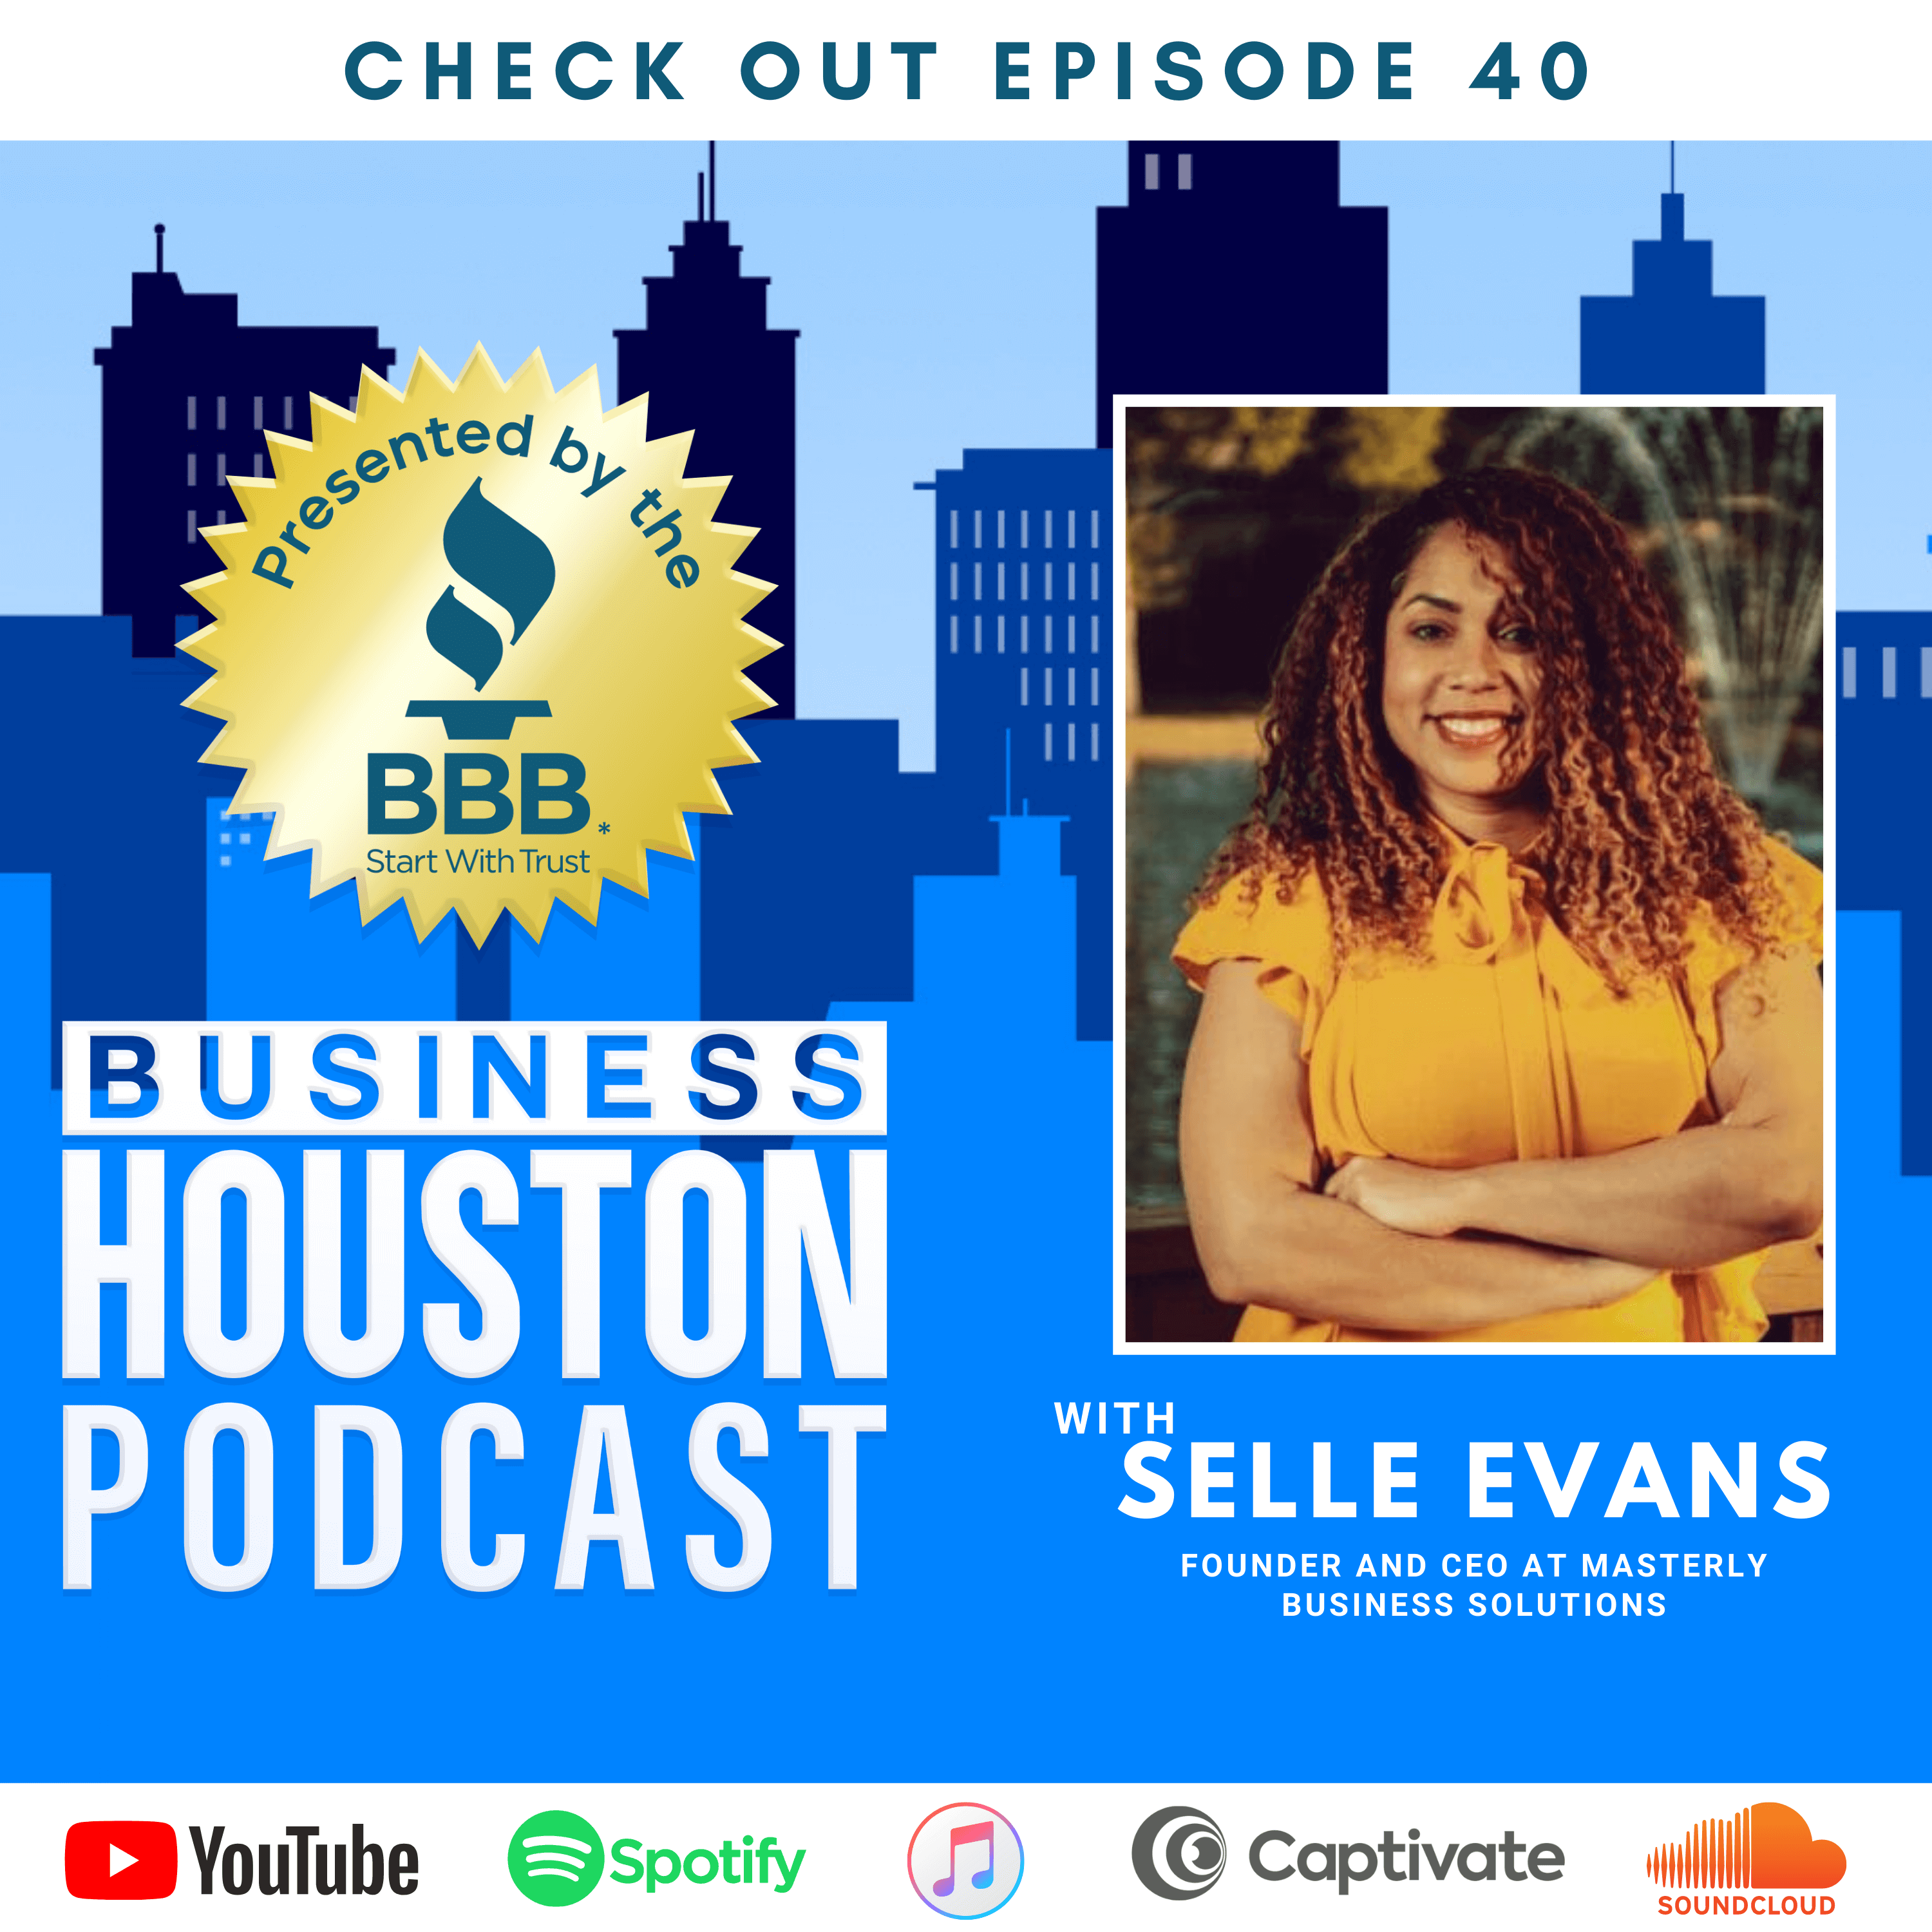 Artwork for podcast Business Houston Podcast